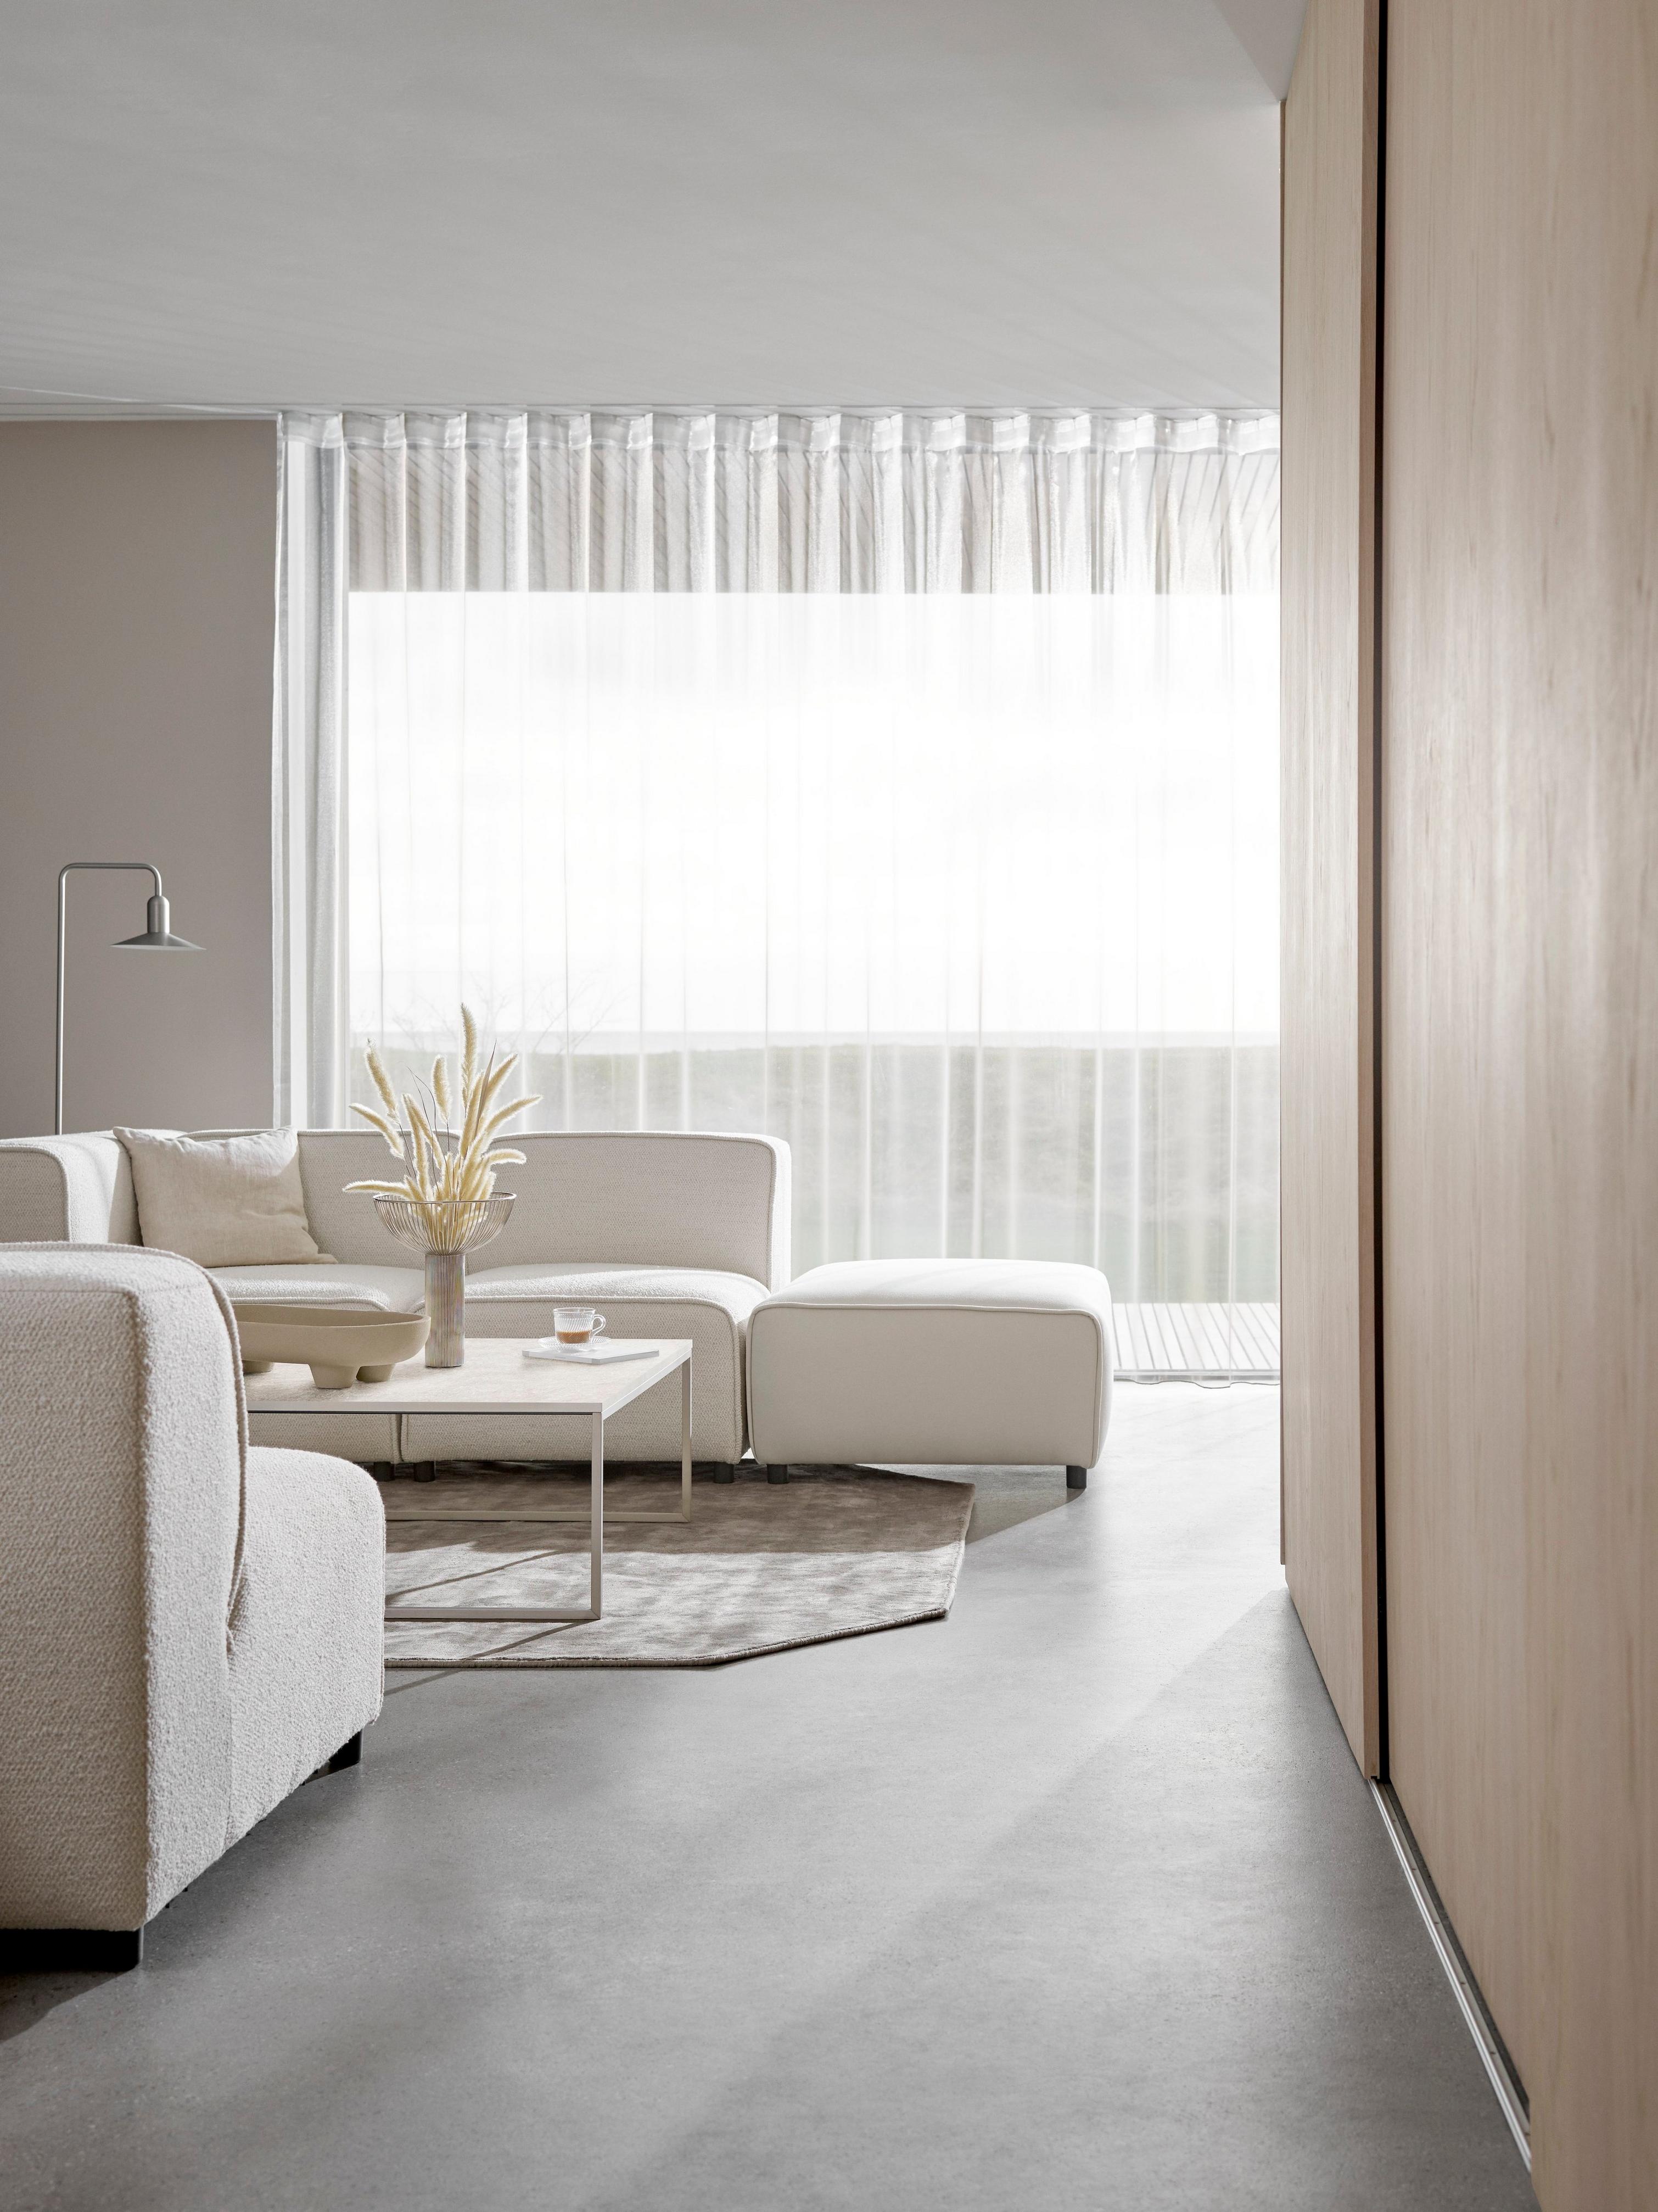 Kremowa sofa Carmo w minimalistycznym pokoju dziennym, przezroczyste zasłony rozpraszające oświetlenie.